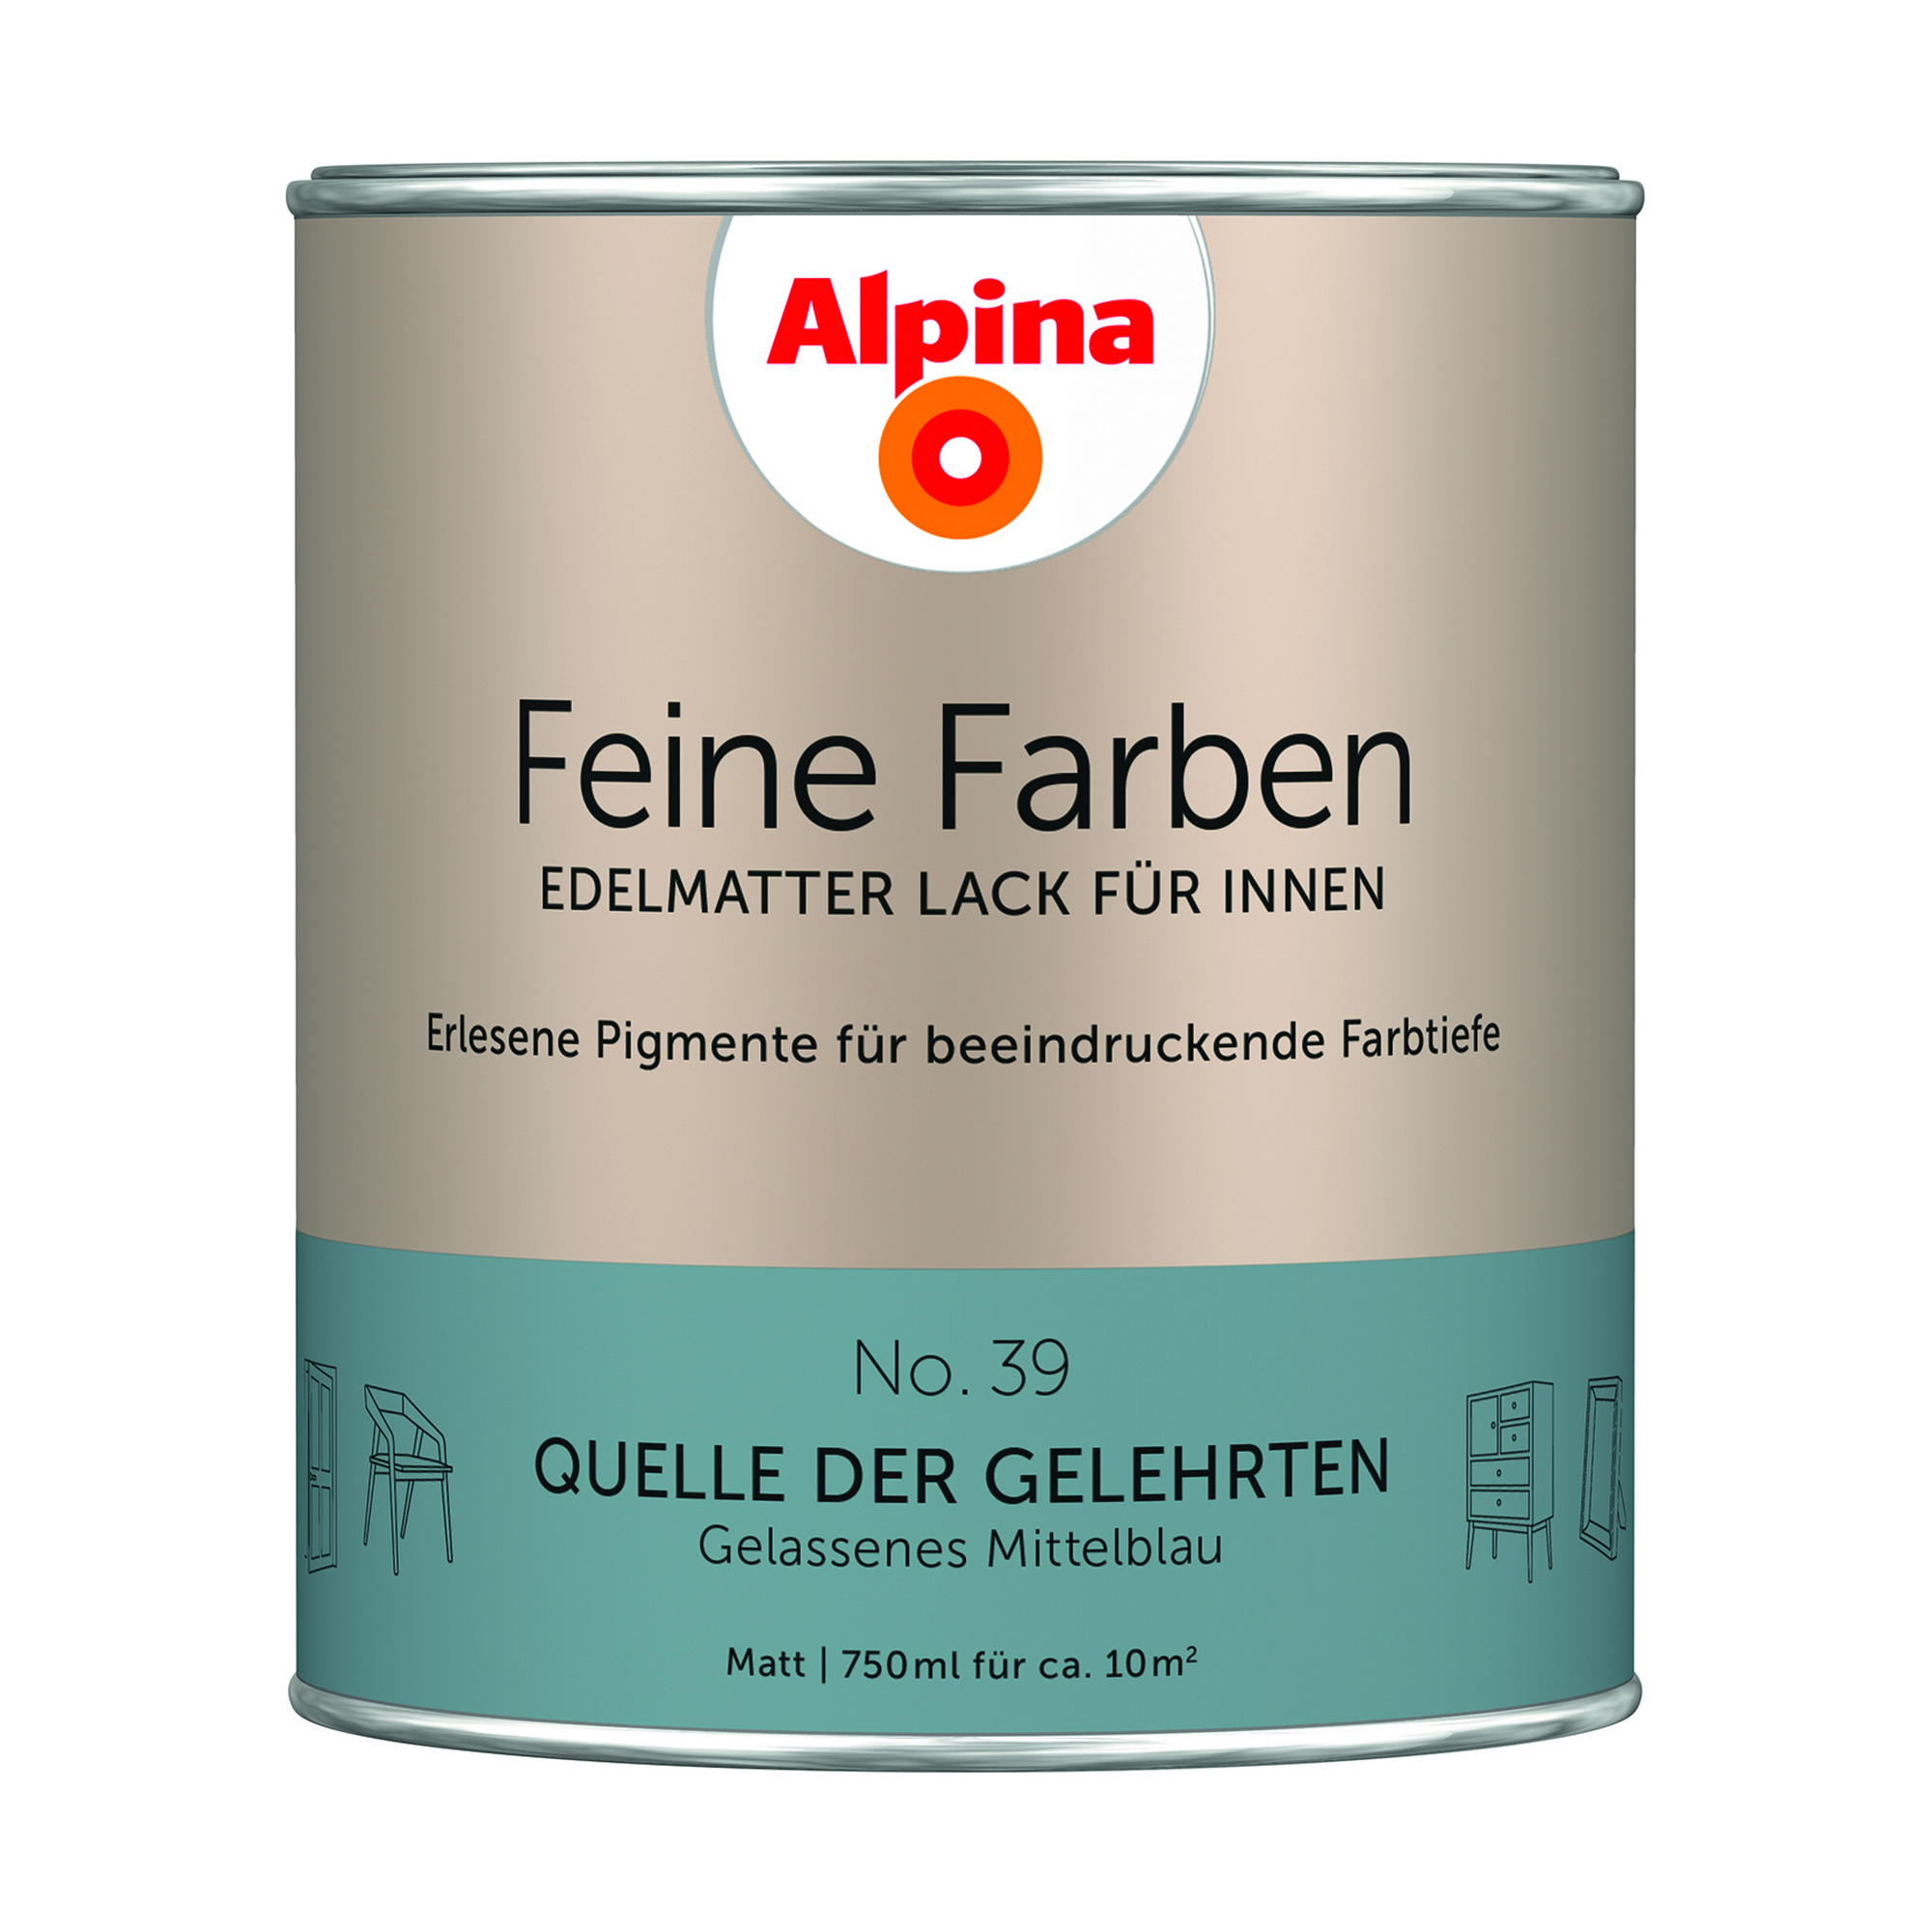 Feine Farben 'Quelle der Gelehrten' mittelblau matt 750 ml + product picture